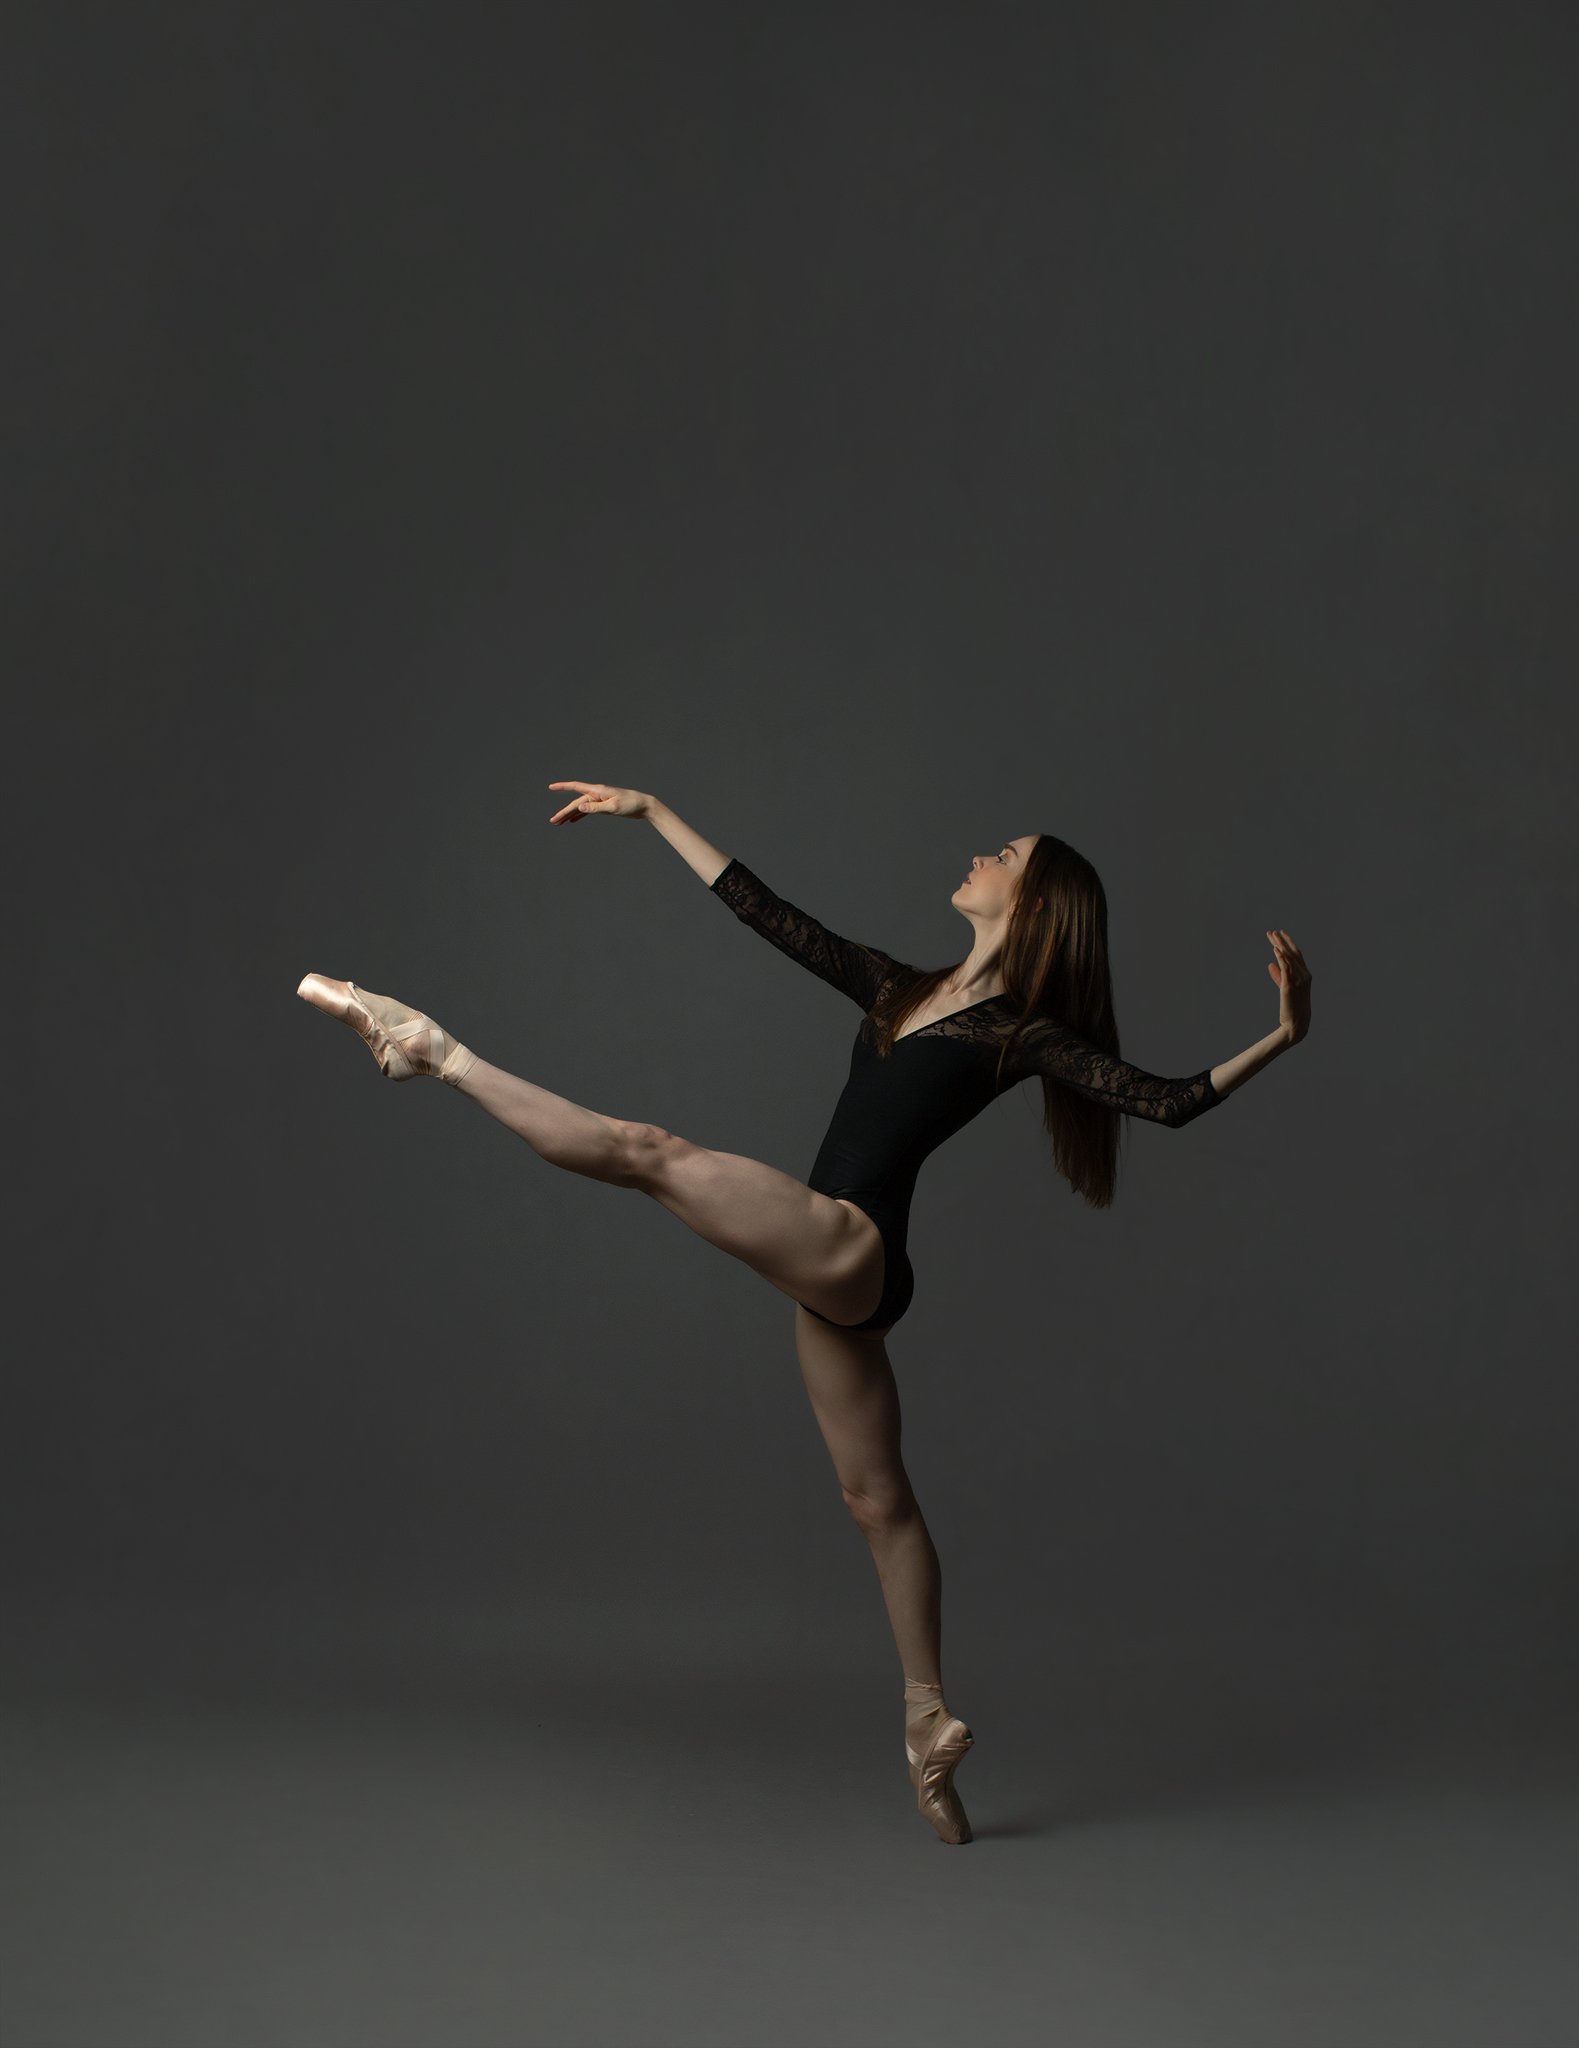 sophie_walters_ballet_dance_elmhurst_elizabethg_fineart_photographer_kingslangley_hertfordshire (3).jpg